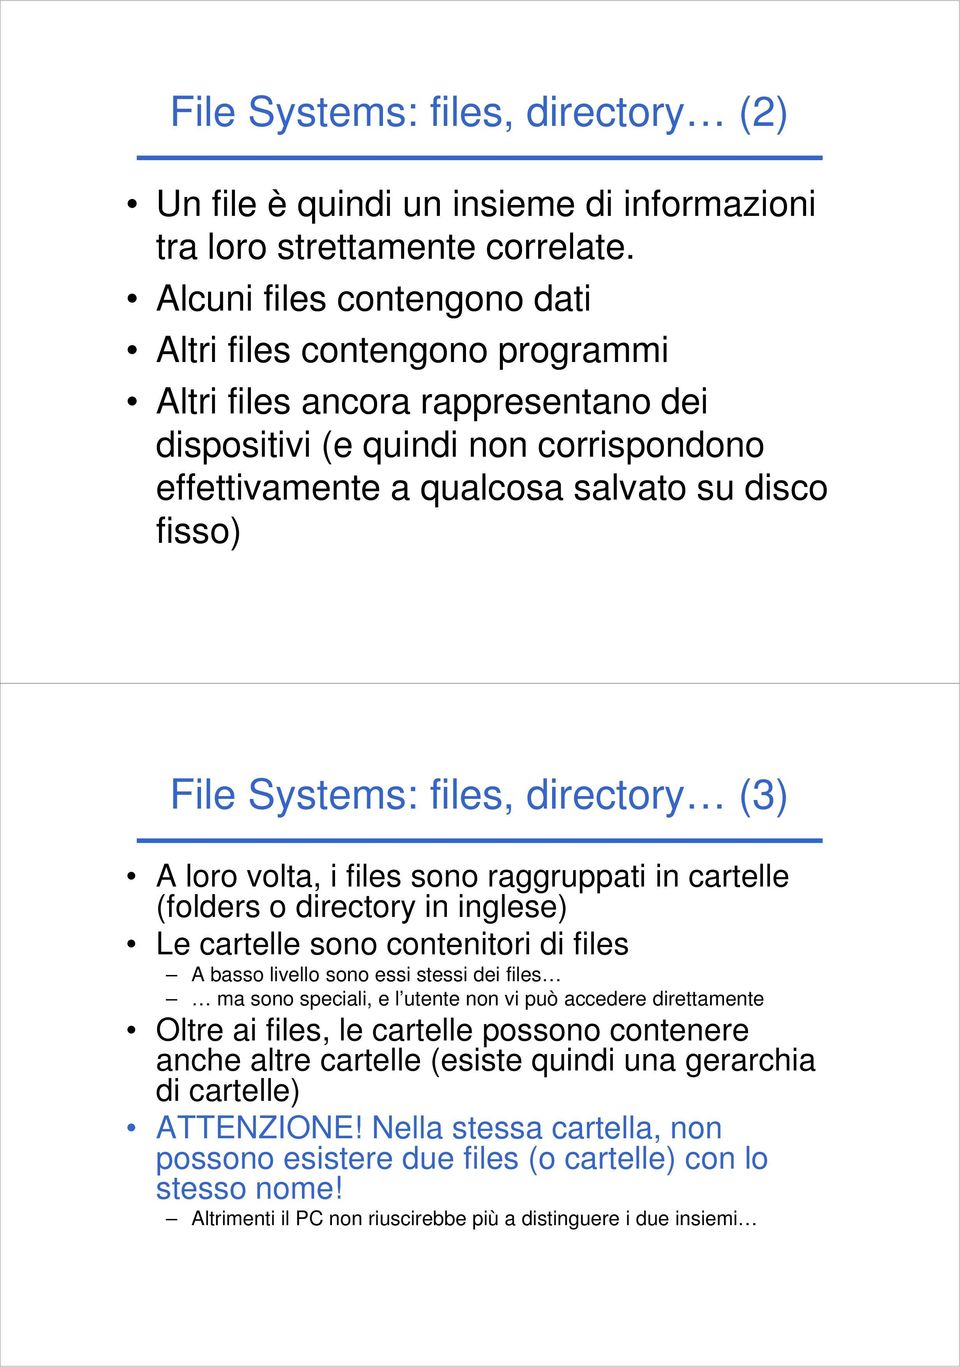 Systems: files, directory (3) A loro volta, i files sono raggruppati in cartelle (folders o directory in inglese) Le cartelle sono contenitori di files A basso livello sono essi stessi dei files ma